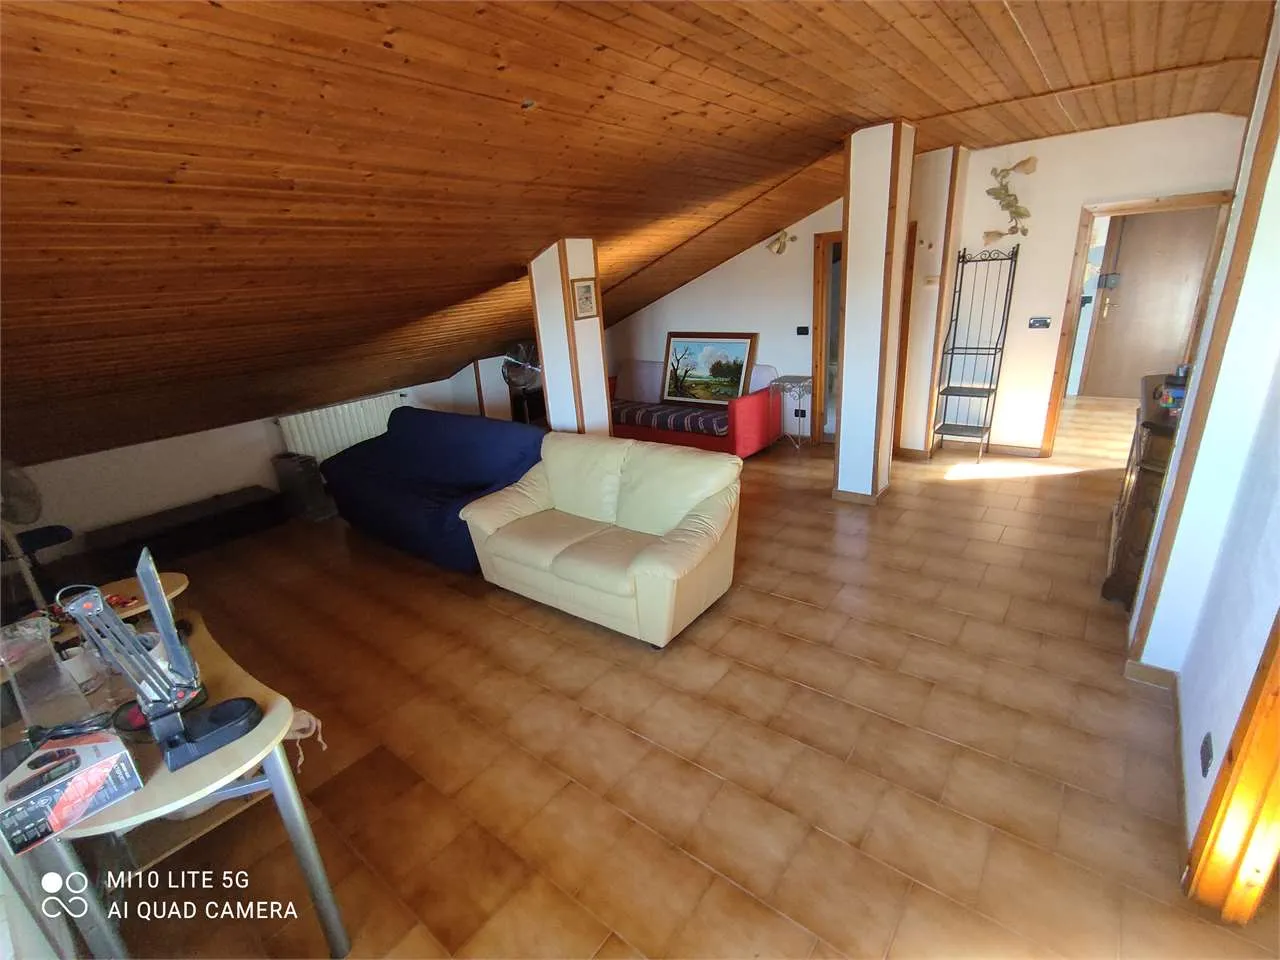 Immagine per Appartamento in vendita a Villastellone viale Signorini 15/a